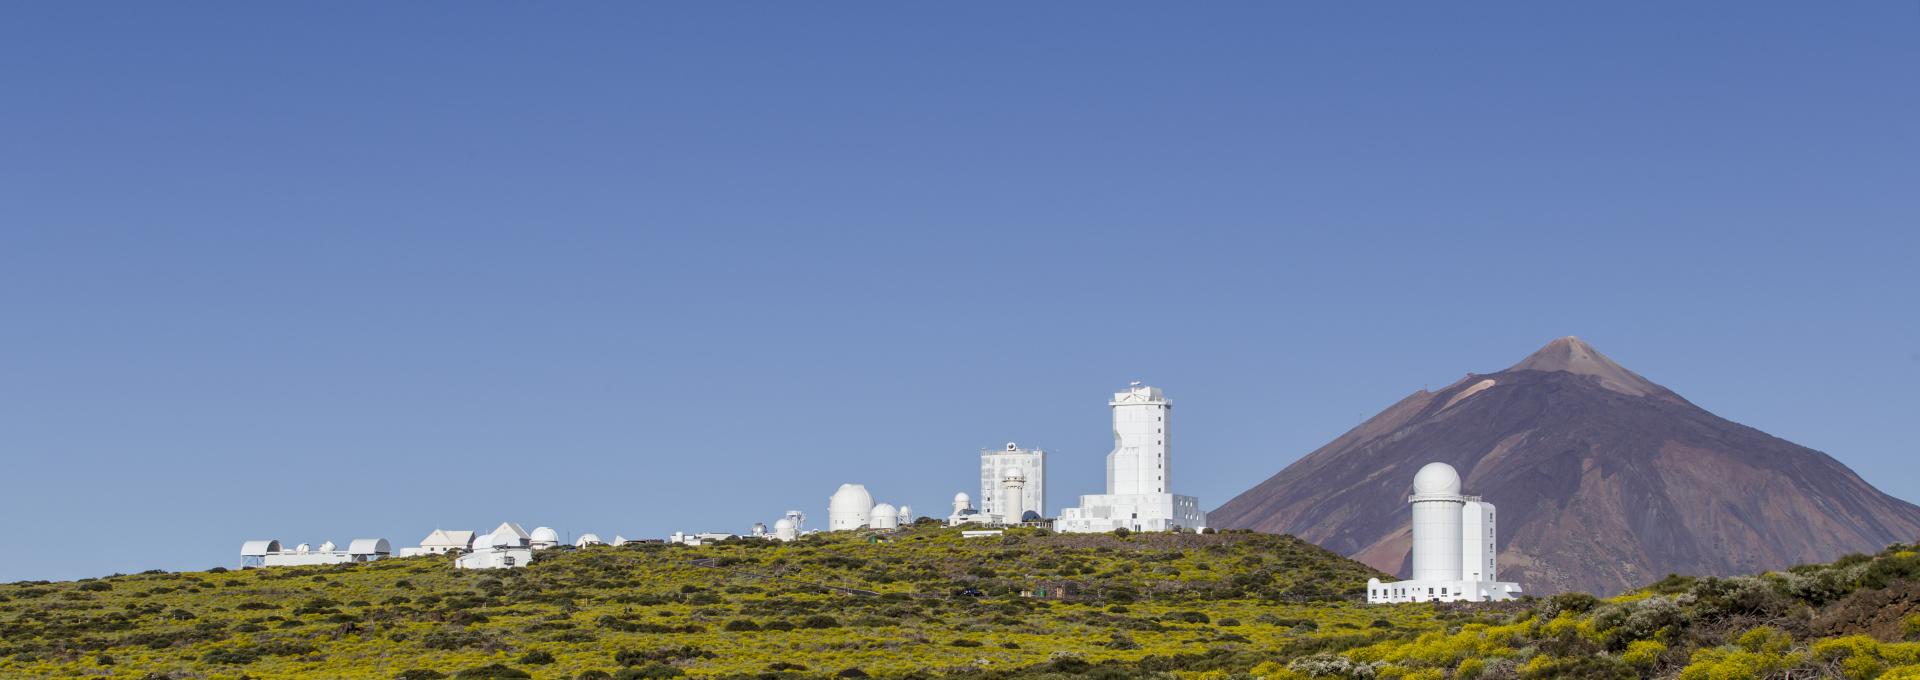 Observatorio del Teide Panoramica Daniel Lopez